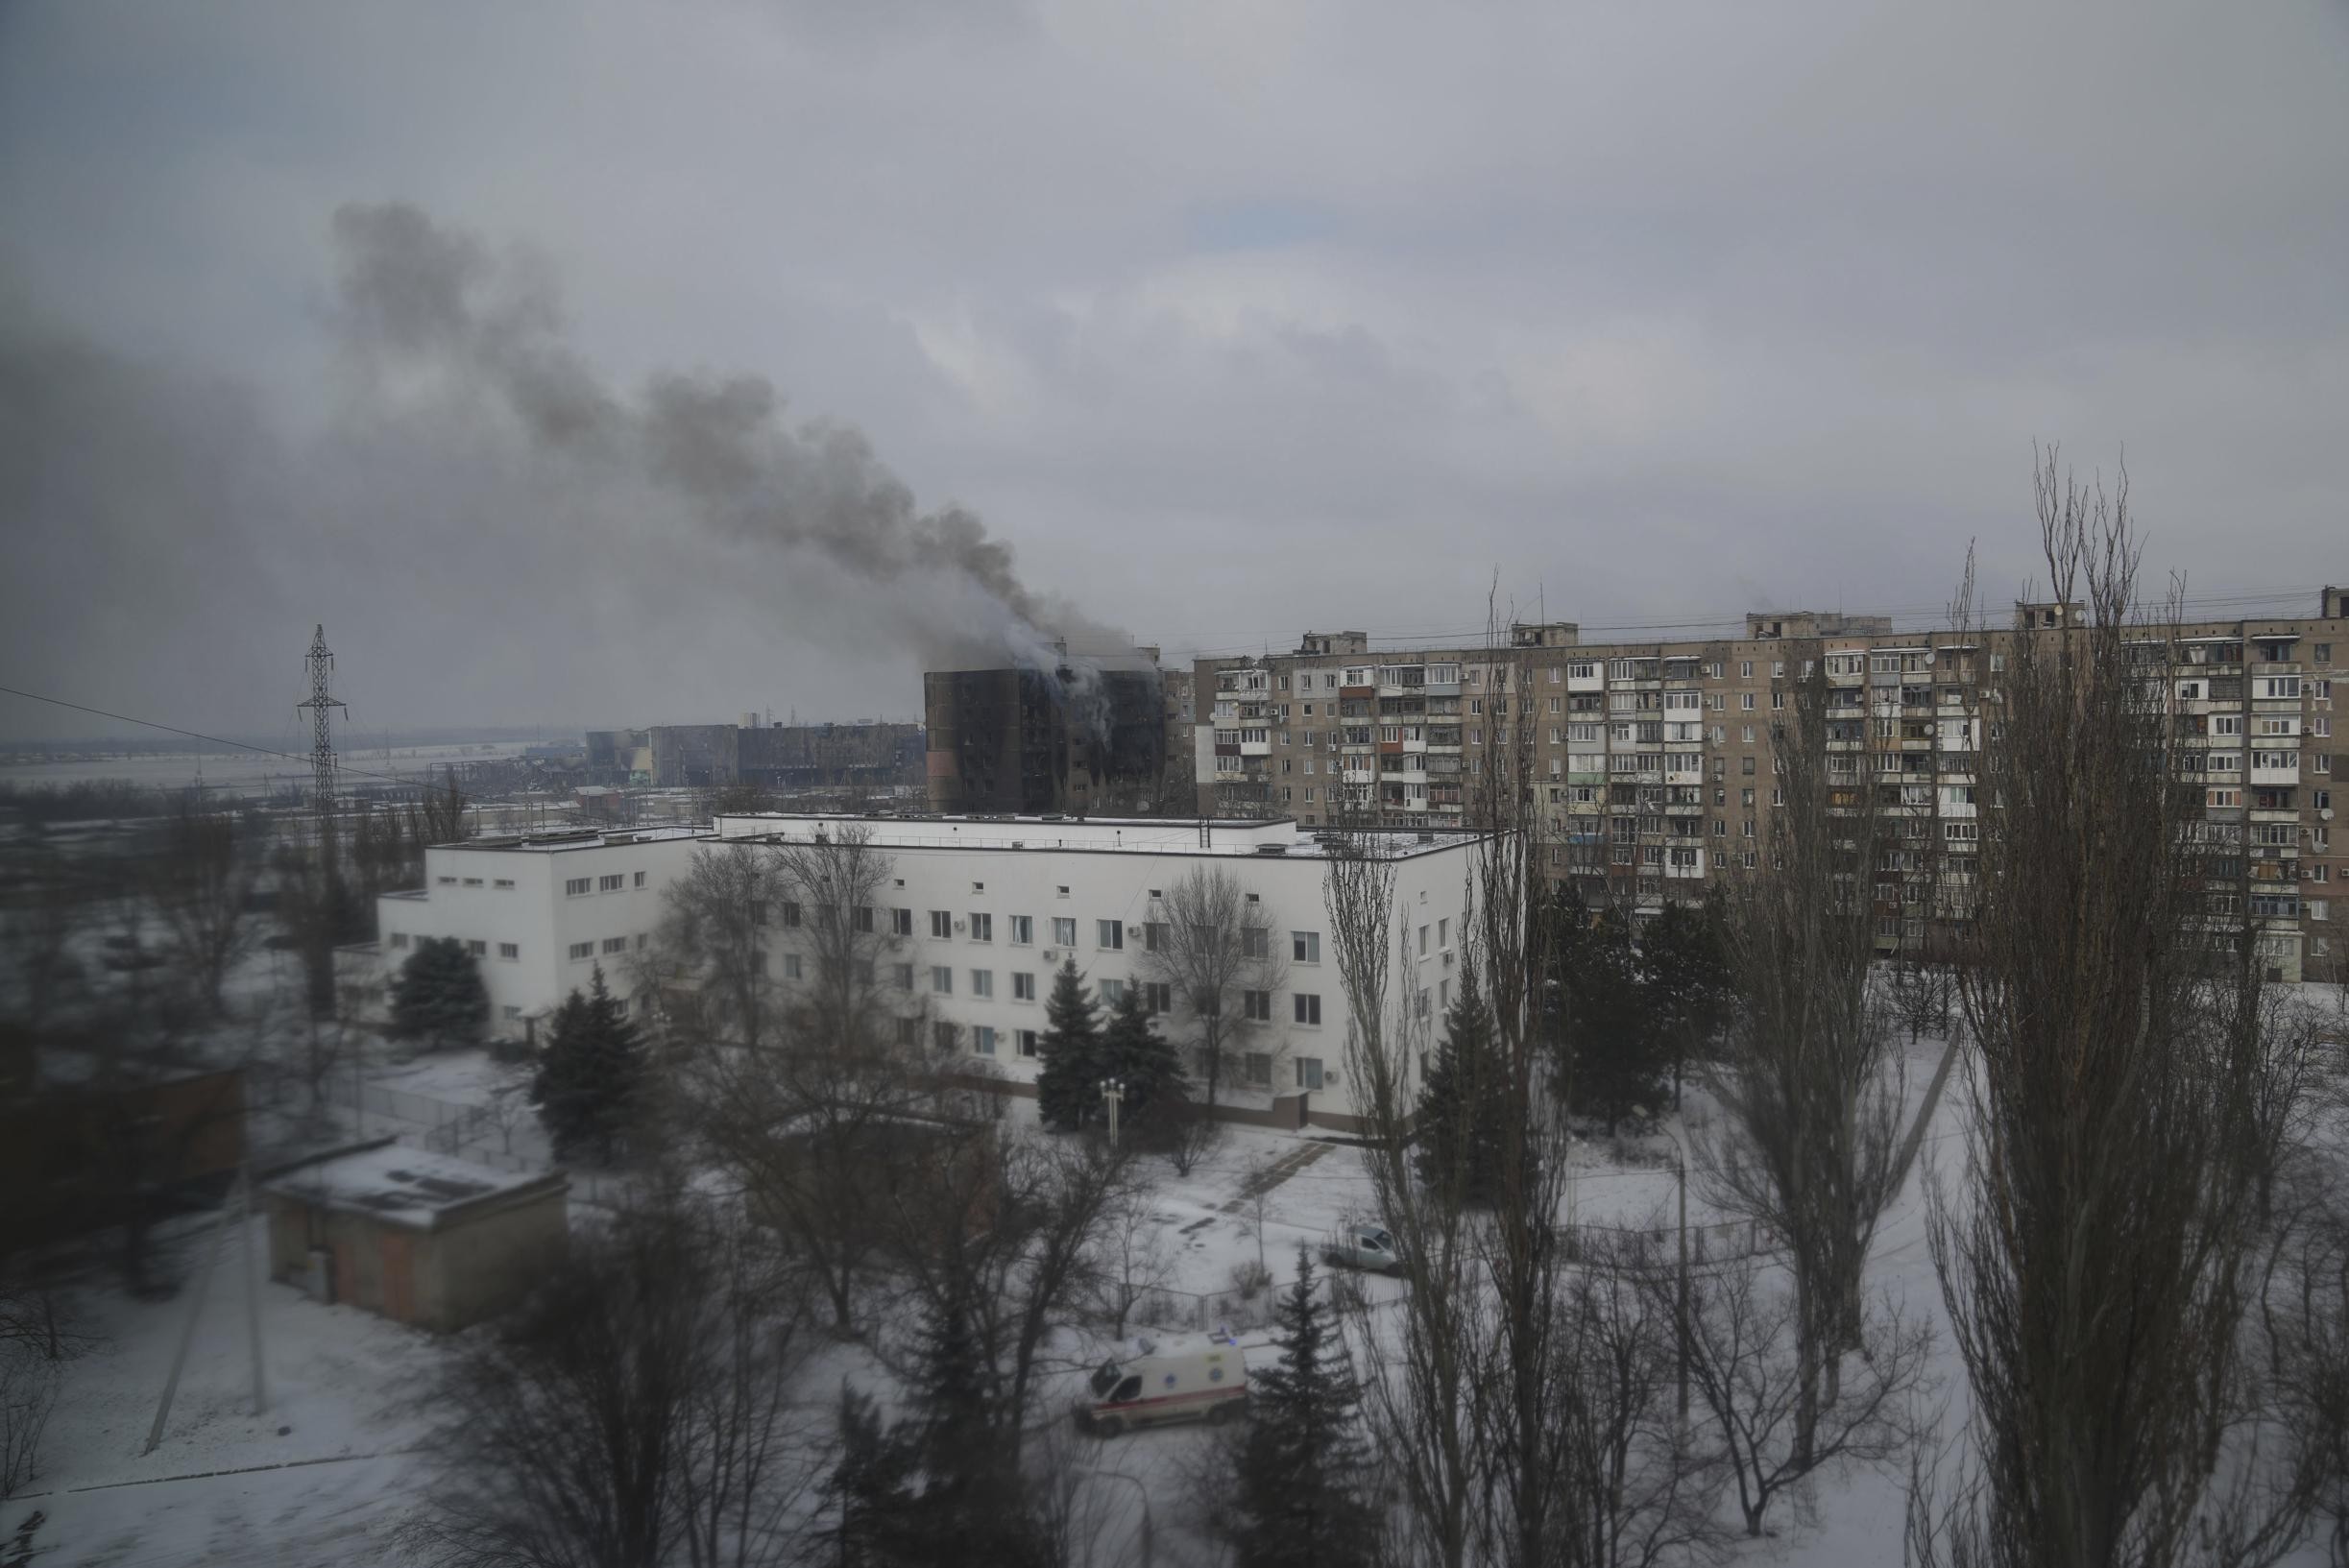 Panoramica.  È successo ieri sera in Ucraina: sirene antiaeree in ogni regione ucraina, nuovo sindaco a Melitopol dopo il rapimento